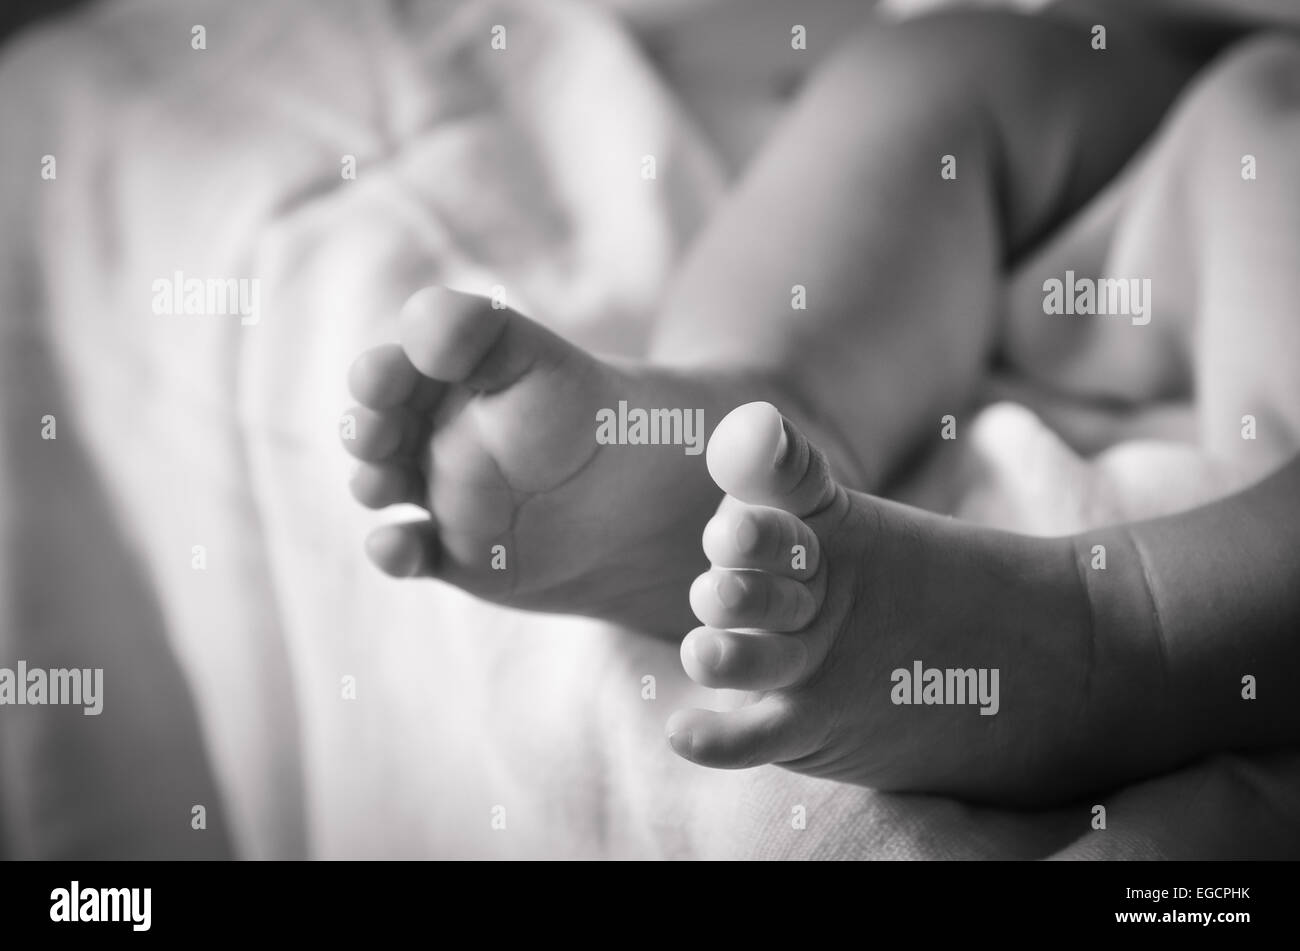 Neugeborene Babys Füße Stockfoto